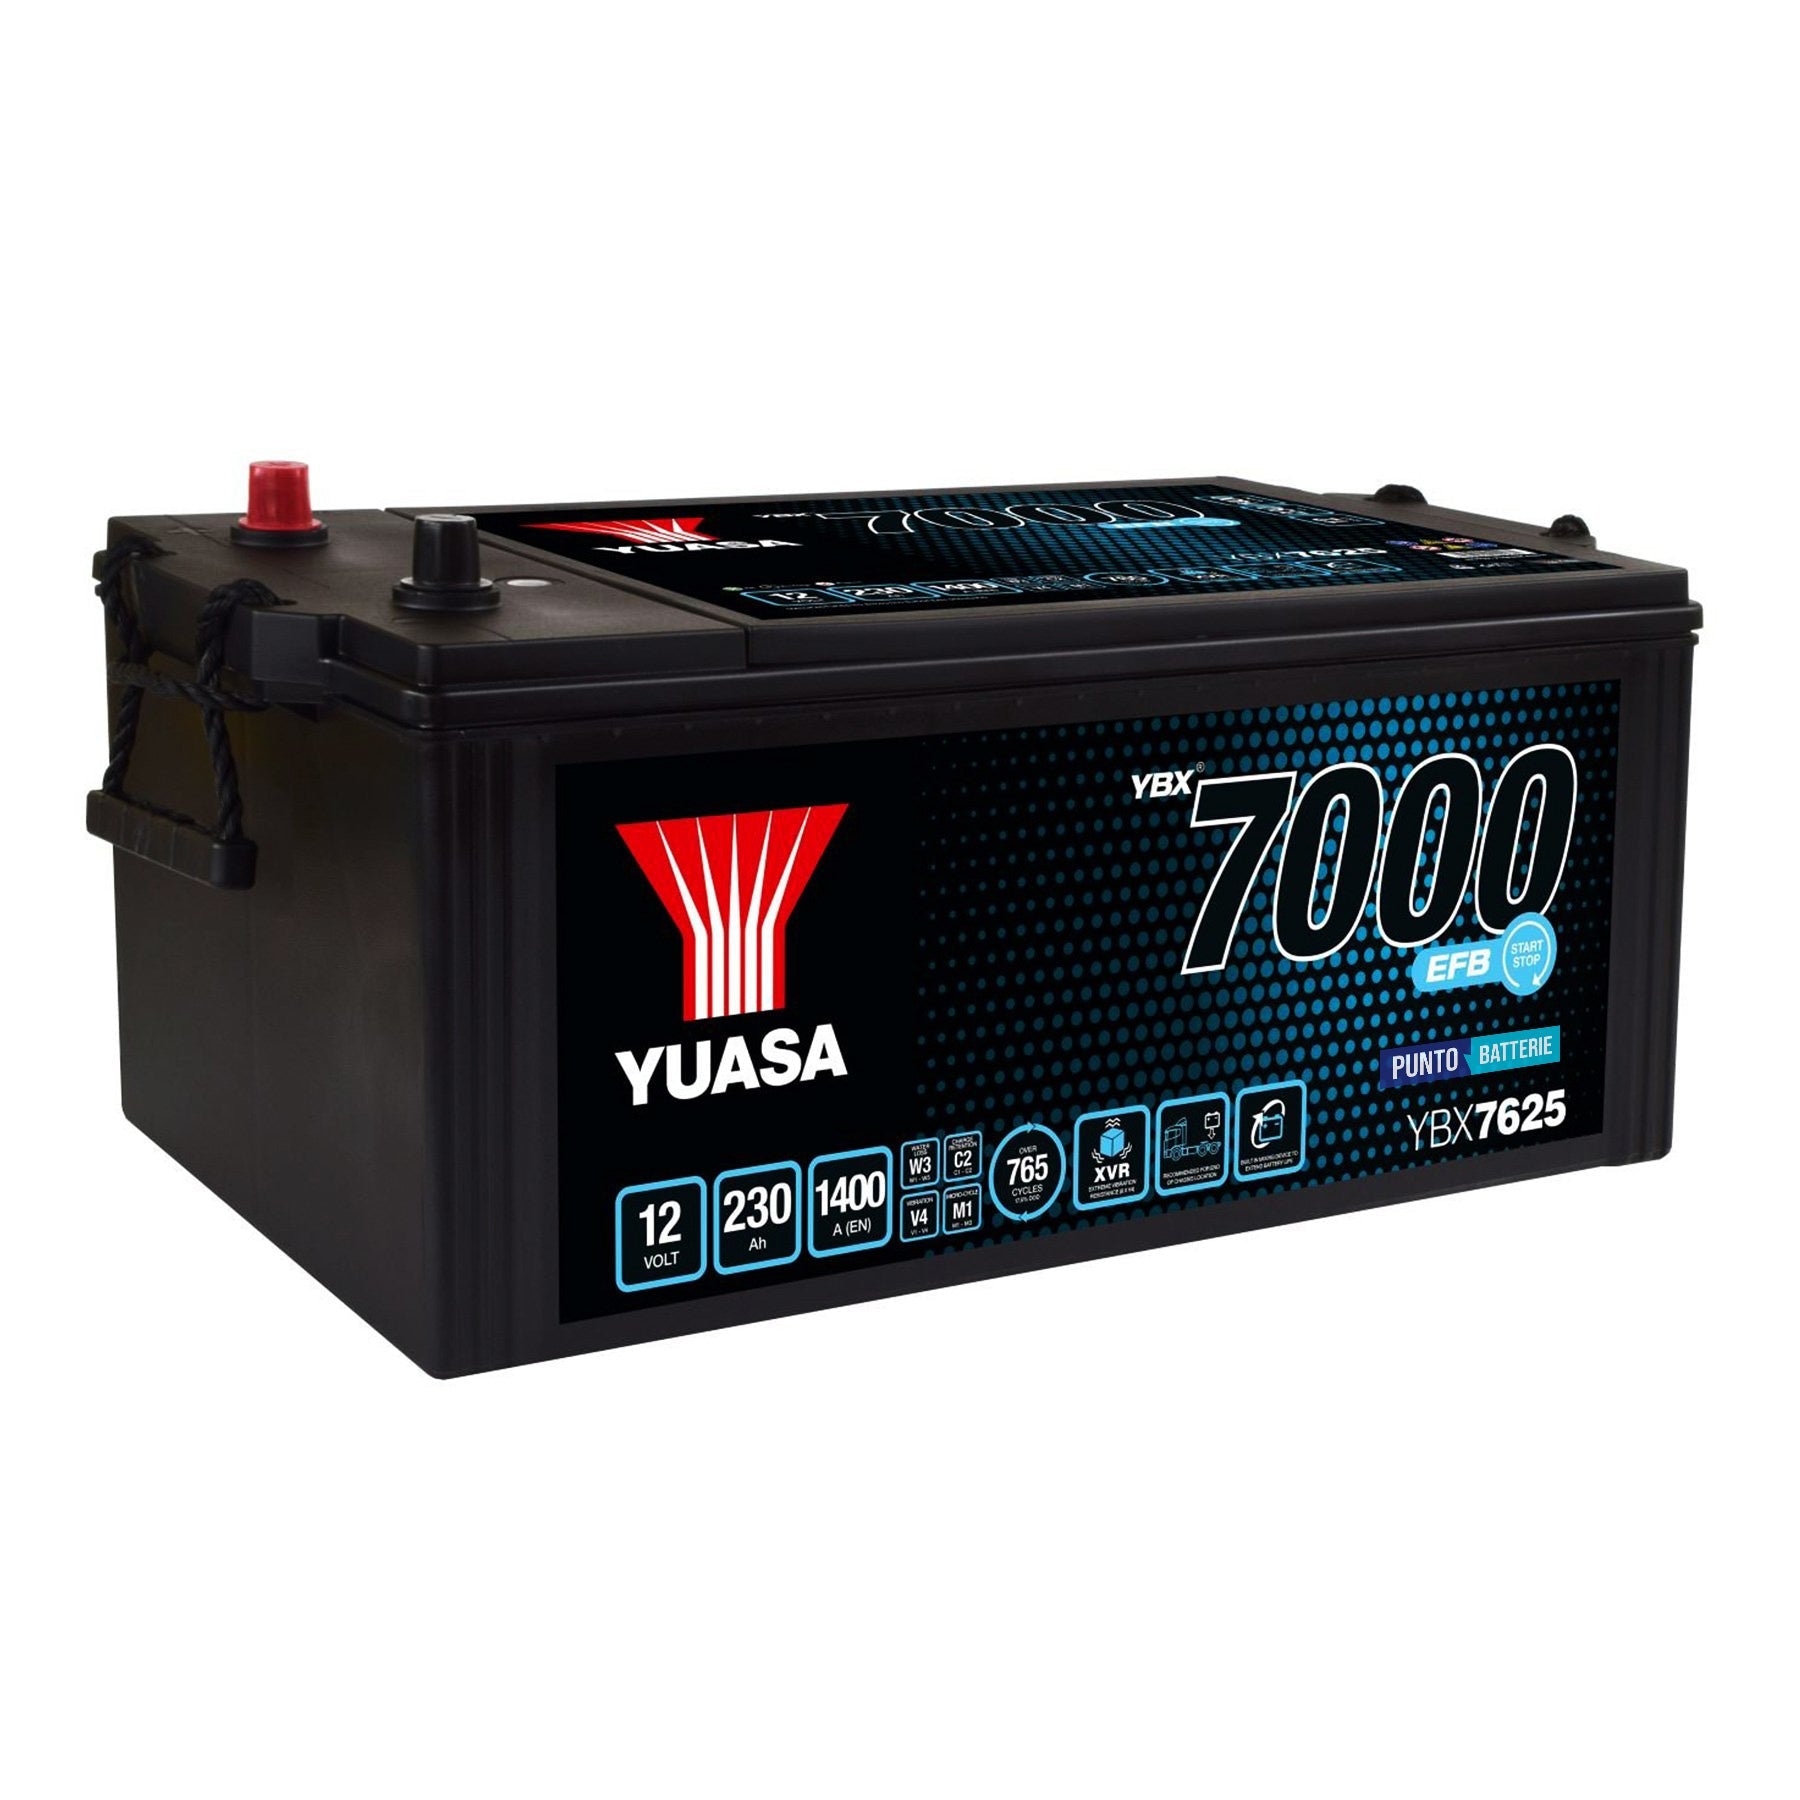 Batteria originale Yuasa YBX7000 YBX7625, dimensioni 516 x 274 x 236, polo positivo a sinistra, 12 volt, 230 amperora, 1400 ampere, EFB. Batteria per camion e veicoli pesanti.